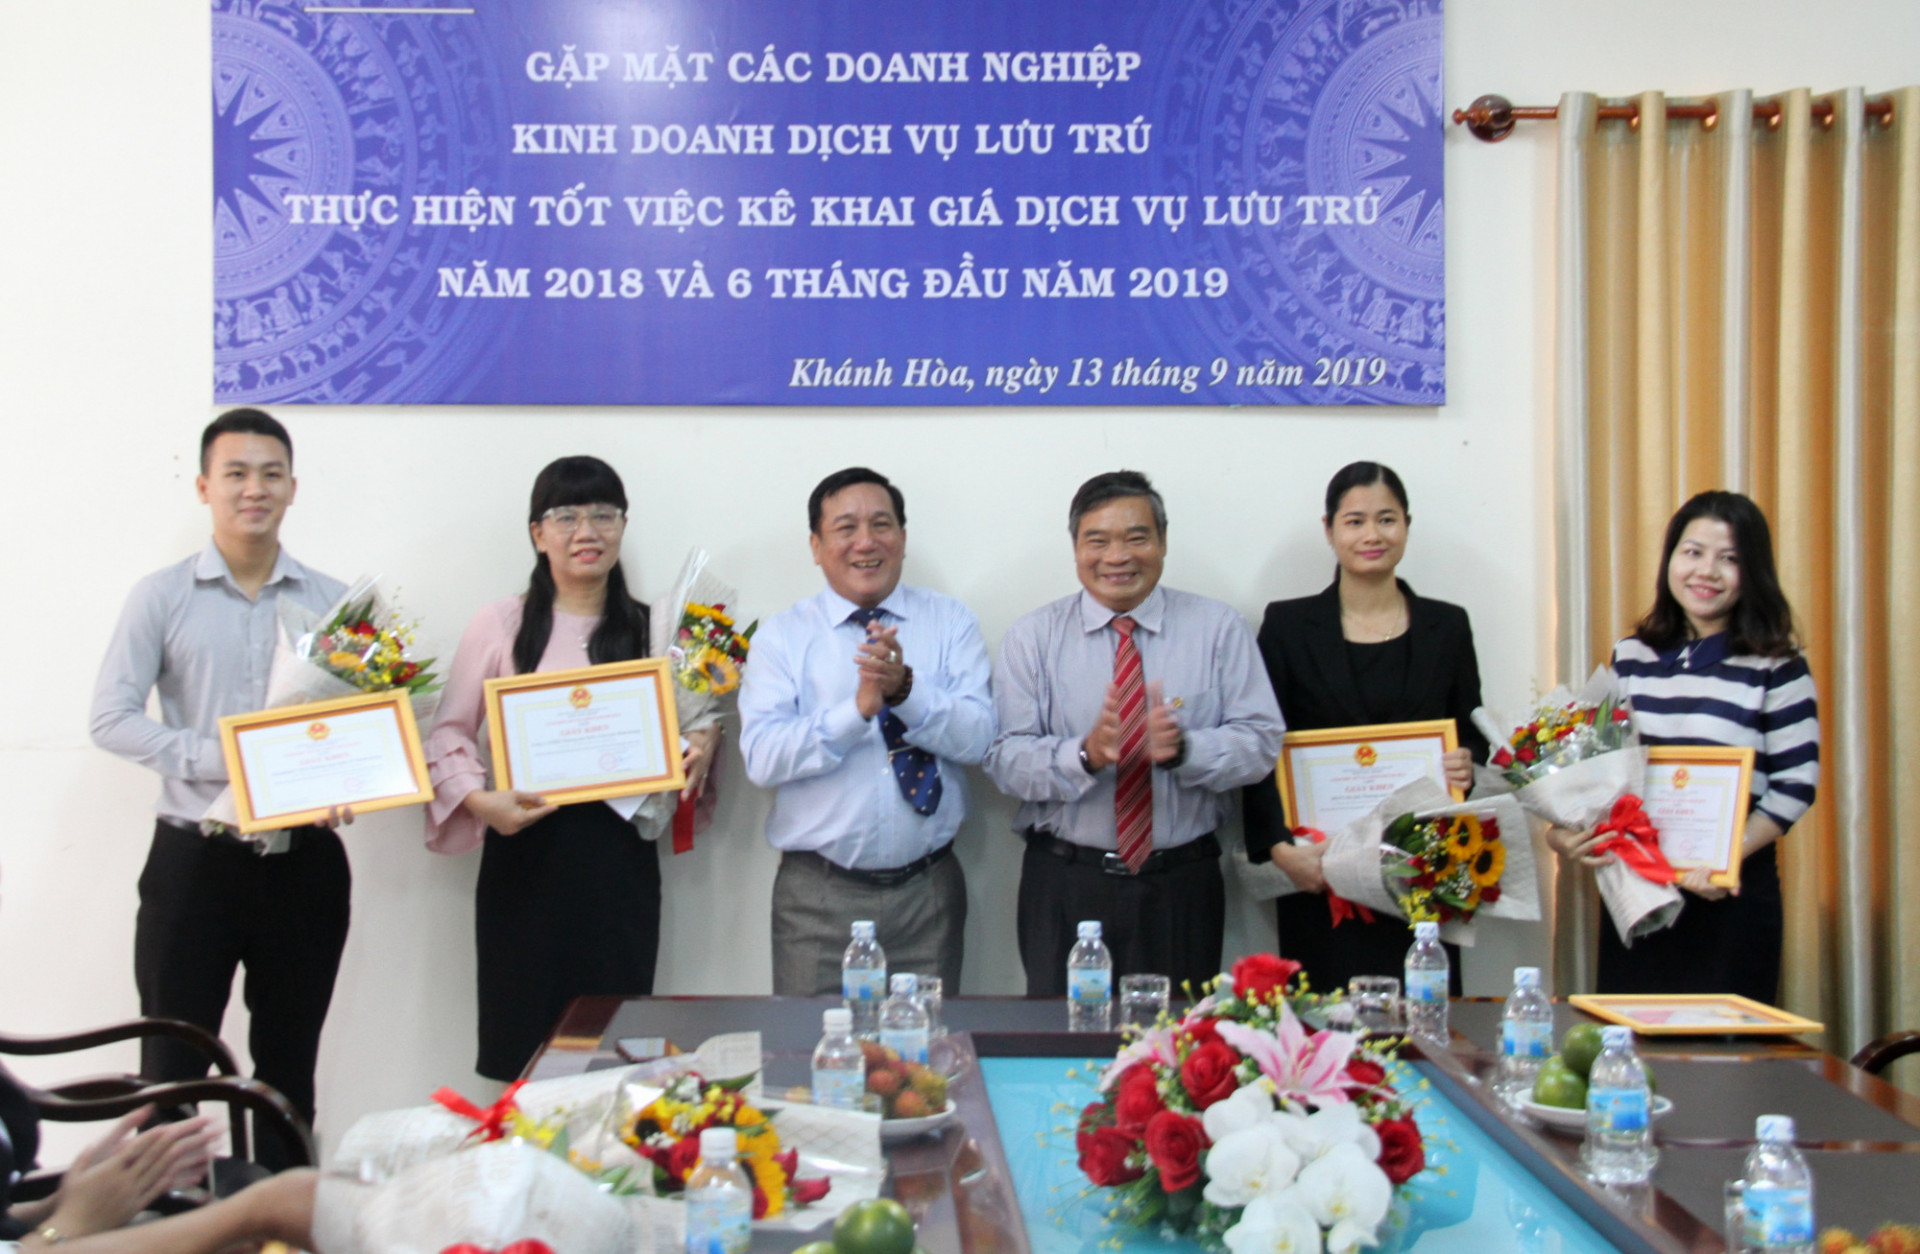 Lãnh đạo Sở Tài chính và Hiệp hội Du lịch Nha Trang – Khánh Hòa trao thưởng cho các doanh nghiệp làm tốt việc kê khai giá dịch vụ lưu trú